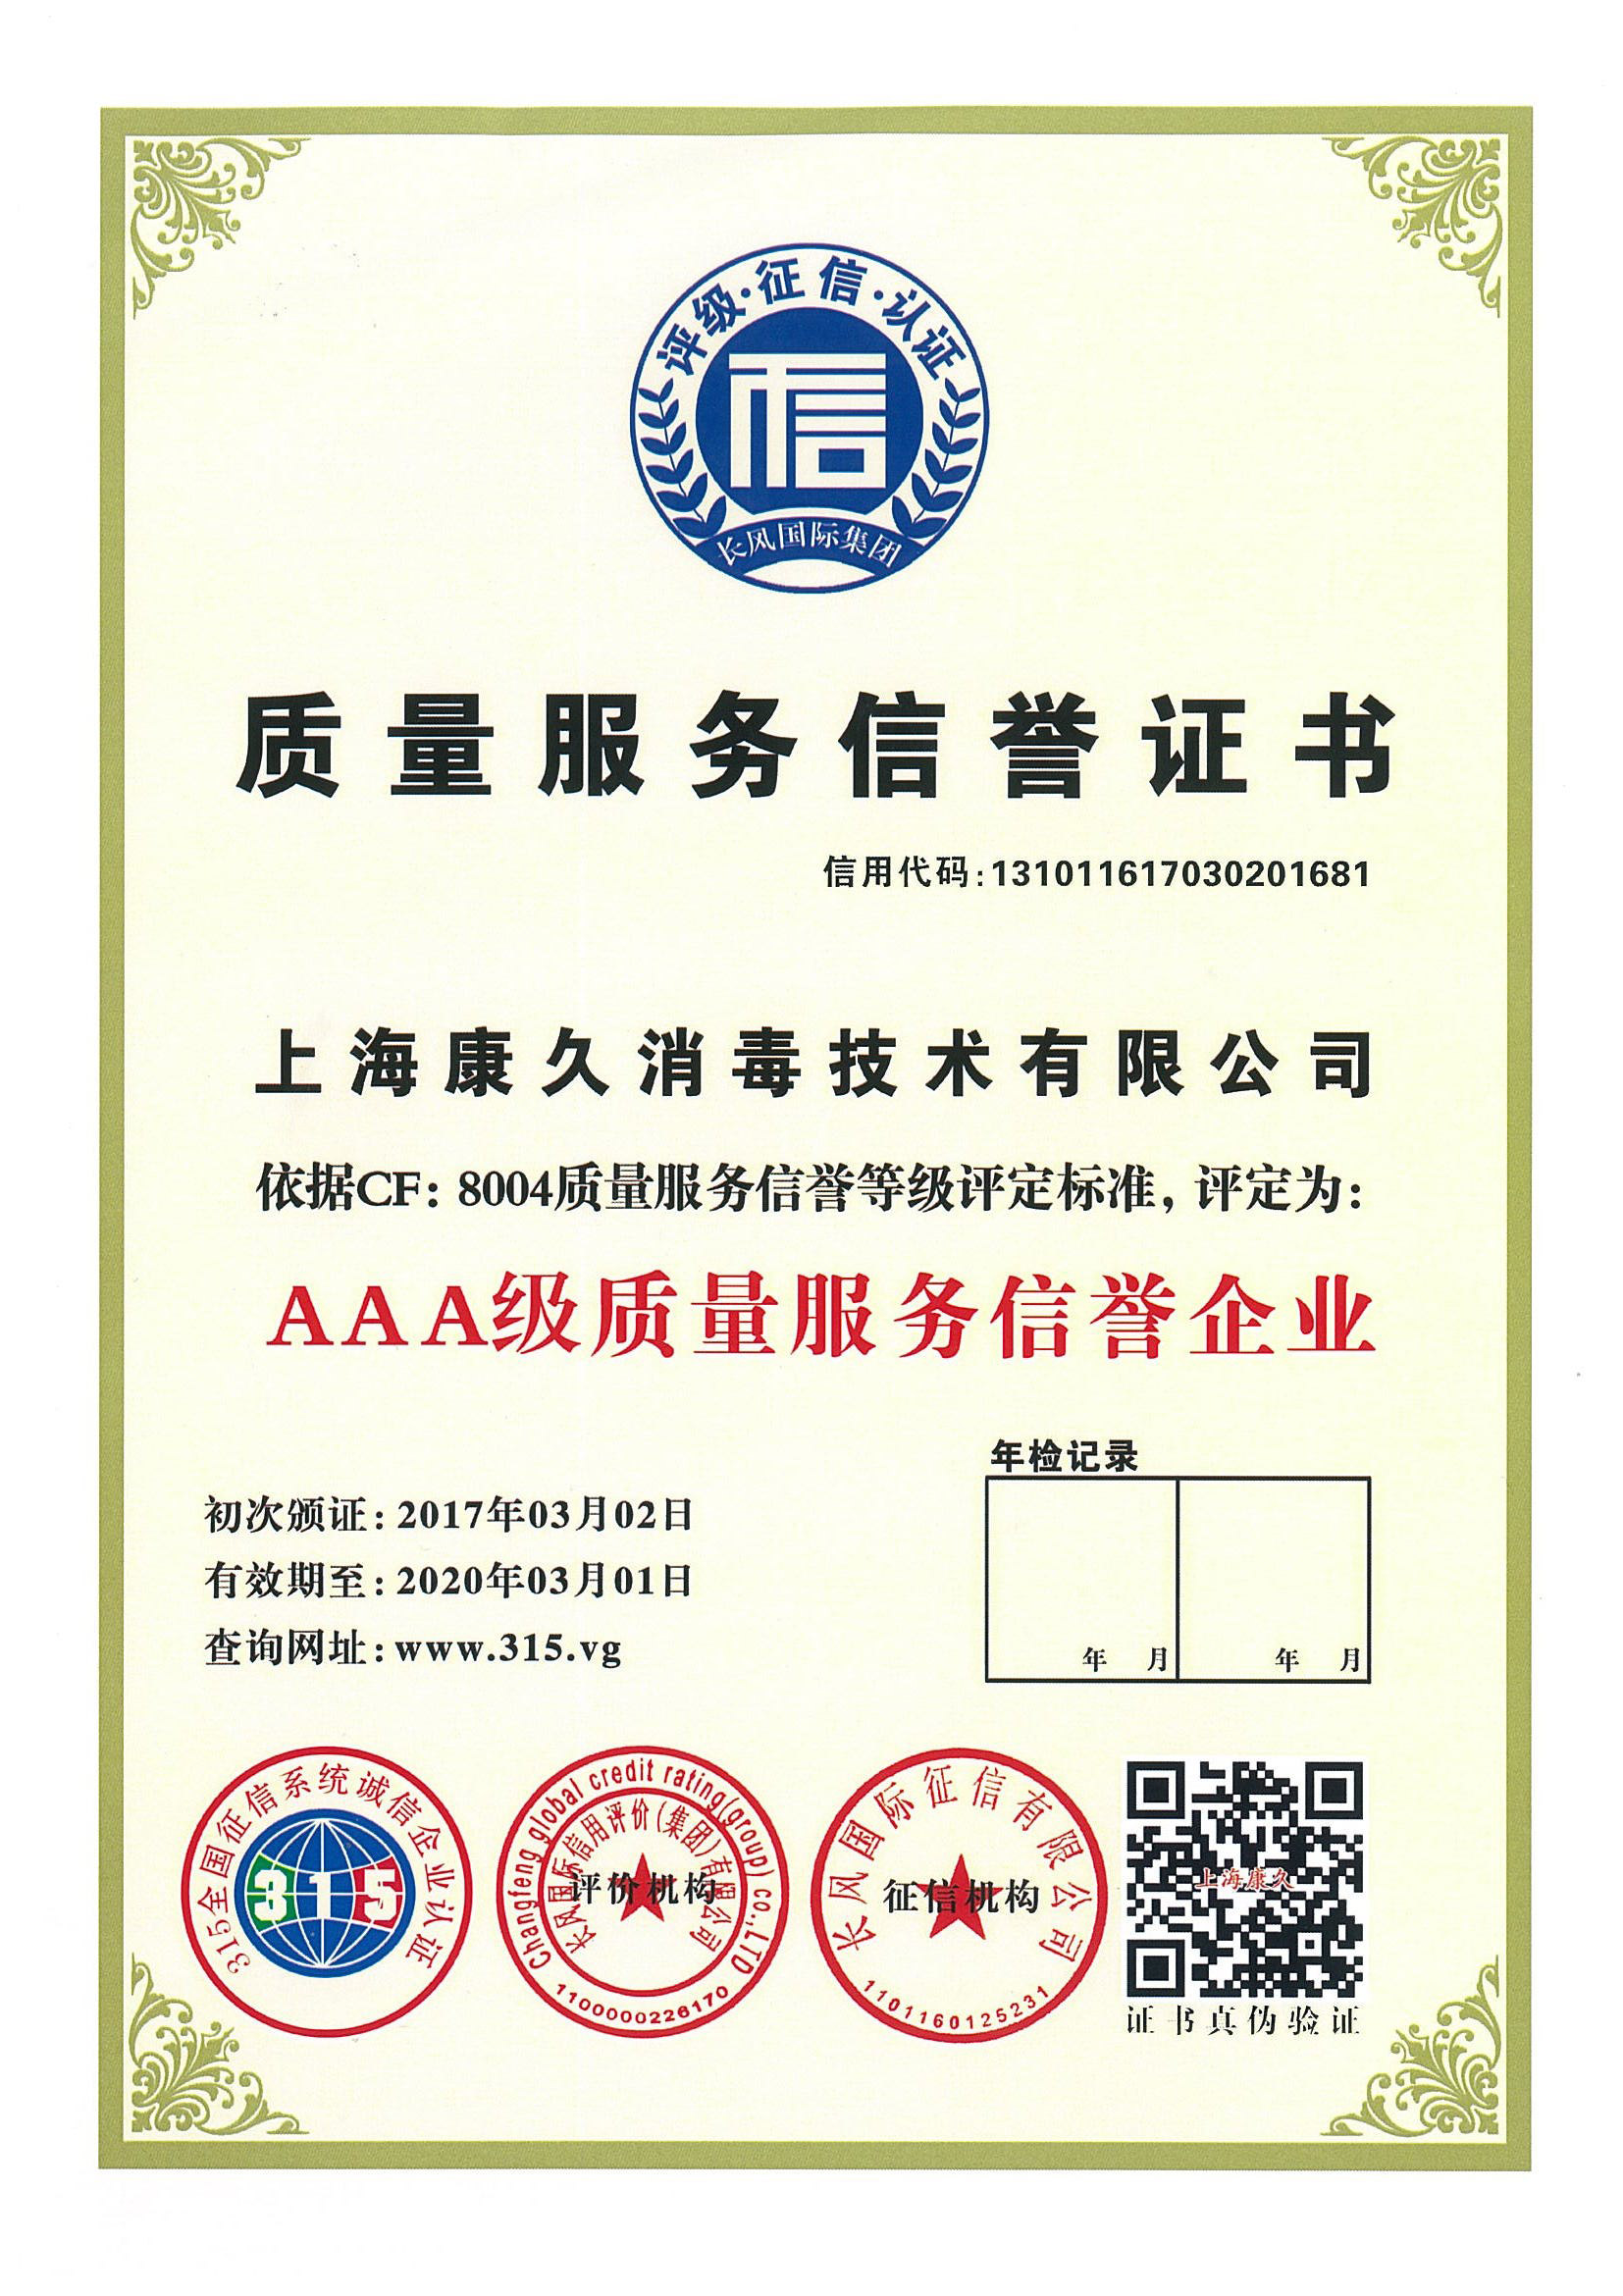 “浦东新区质量服务信誉证书